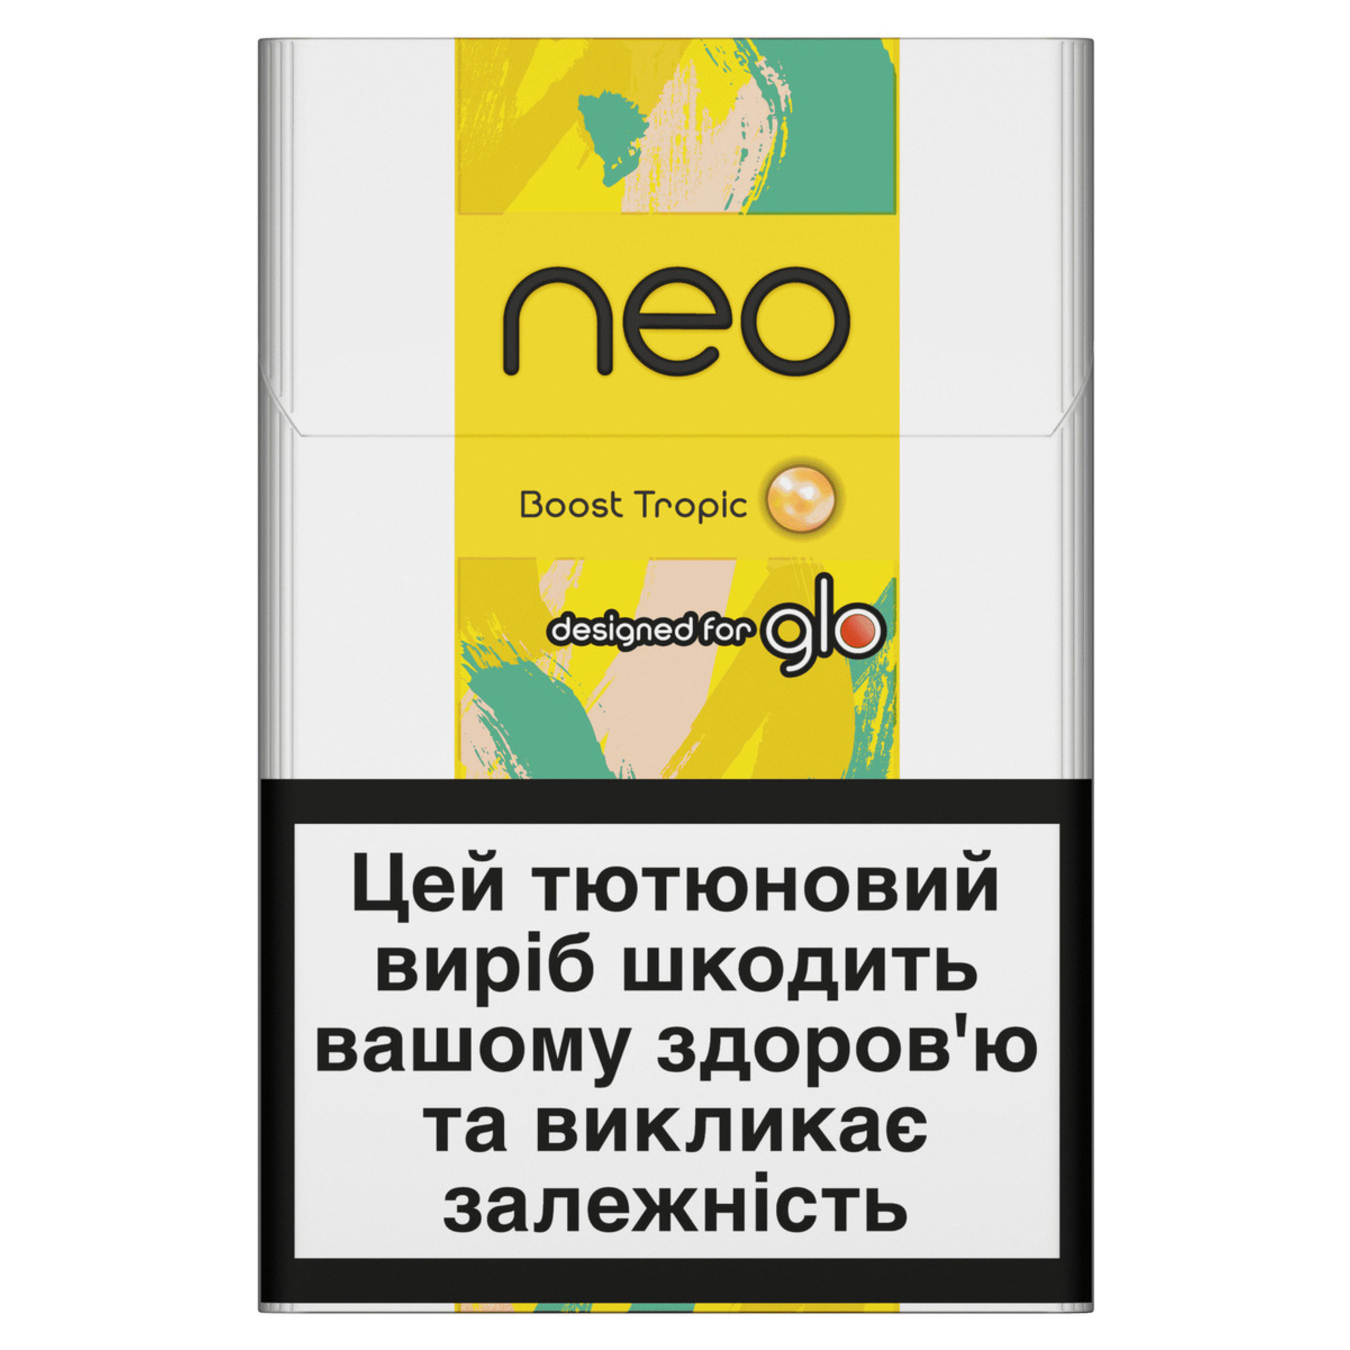 Стіки Neo Sticks Boost Tropic 20шт (ціна вказана без акцизу)